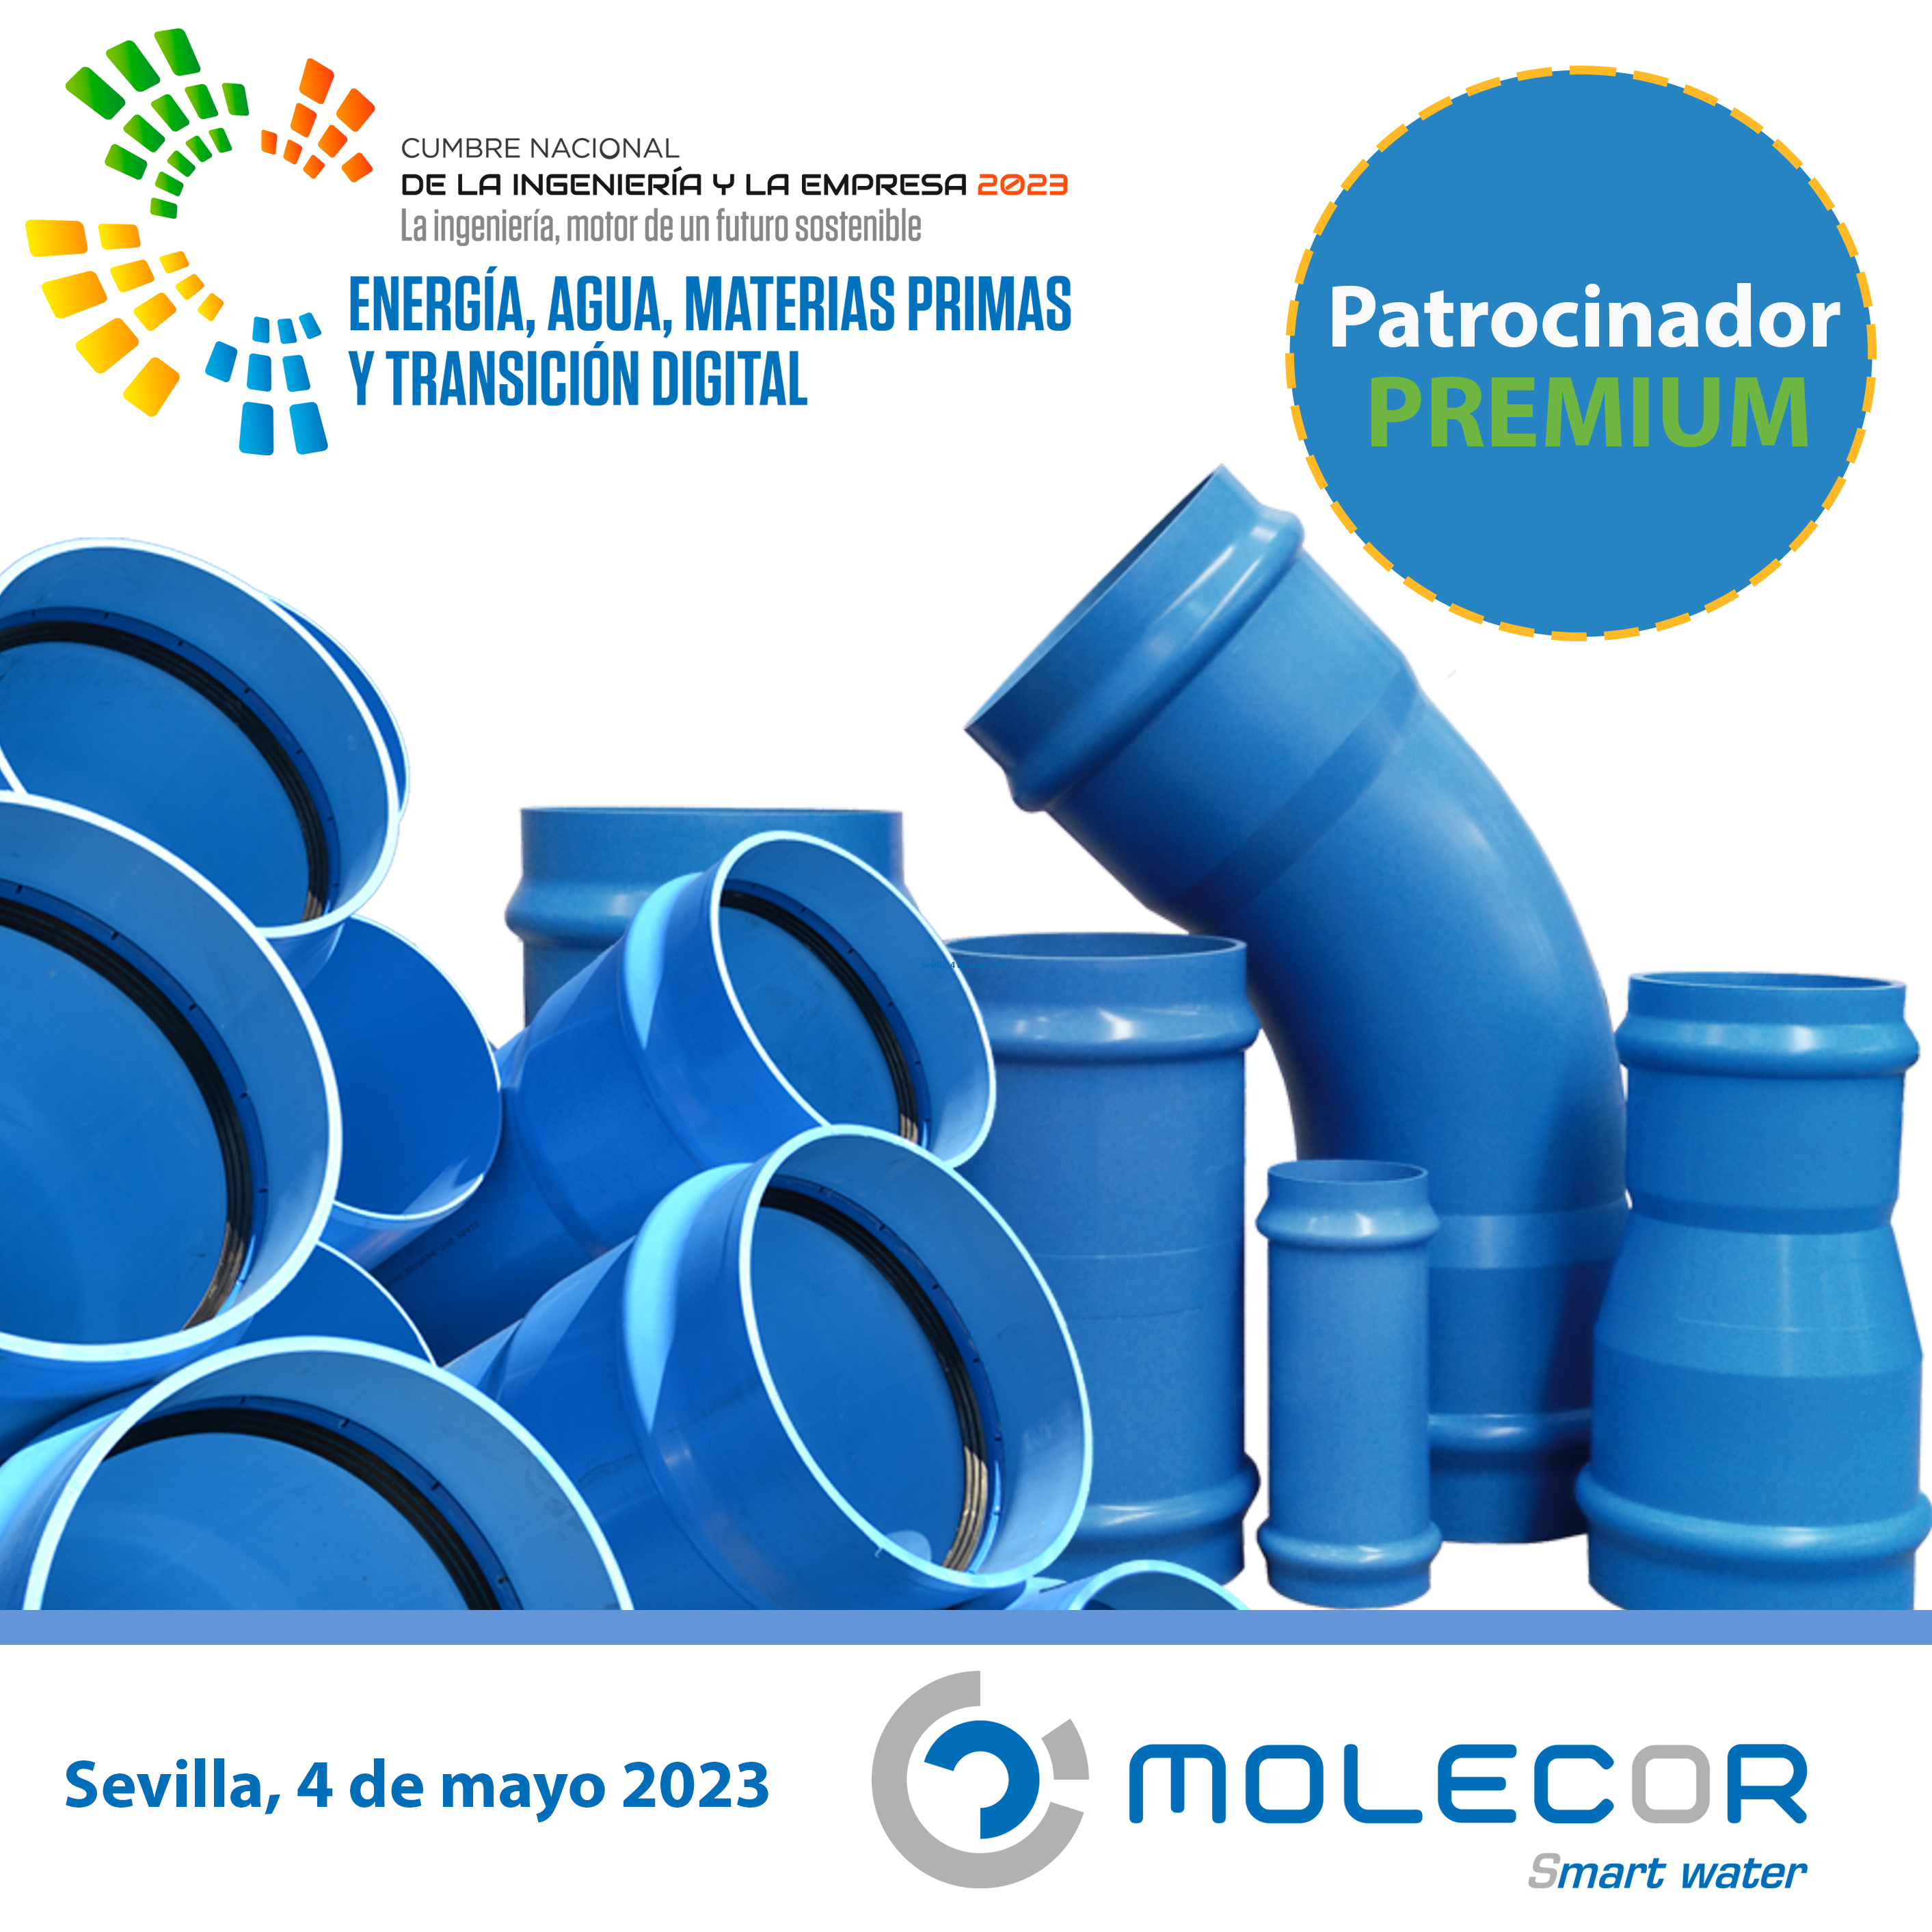 Molecor participará en la Cumbre de la Ingeniería y la Empresa 2023